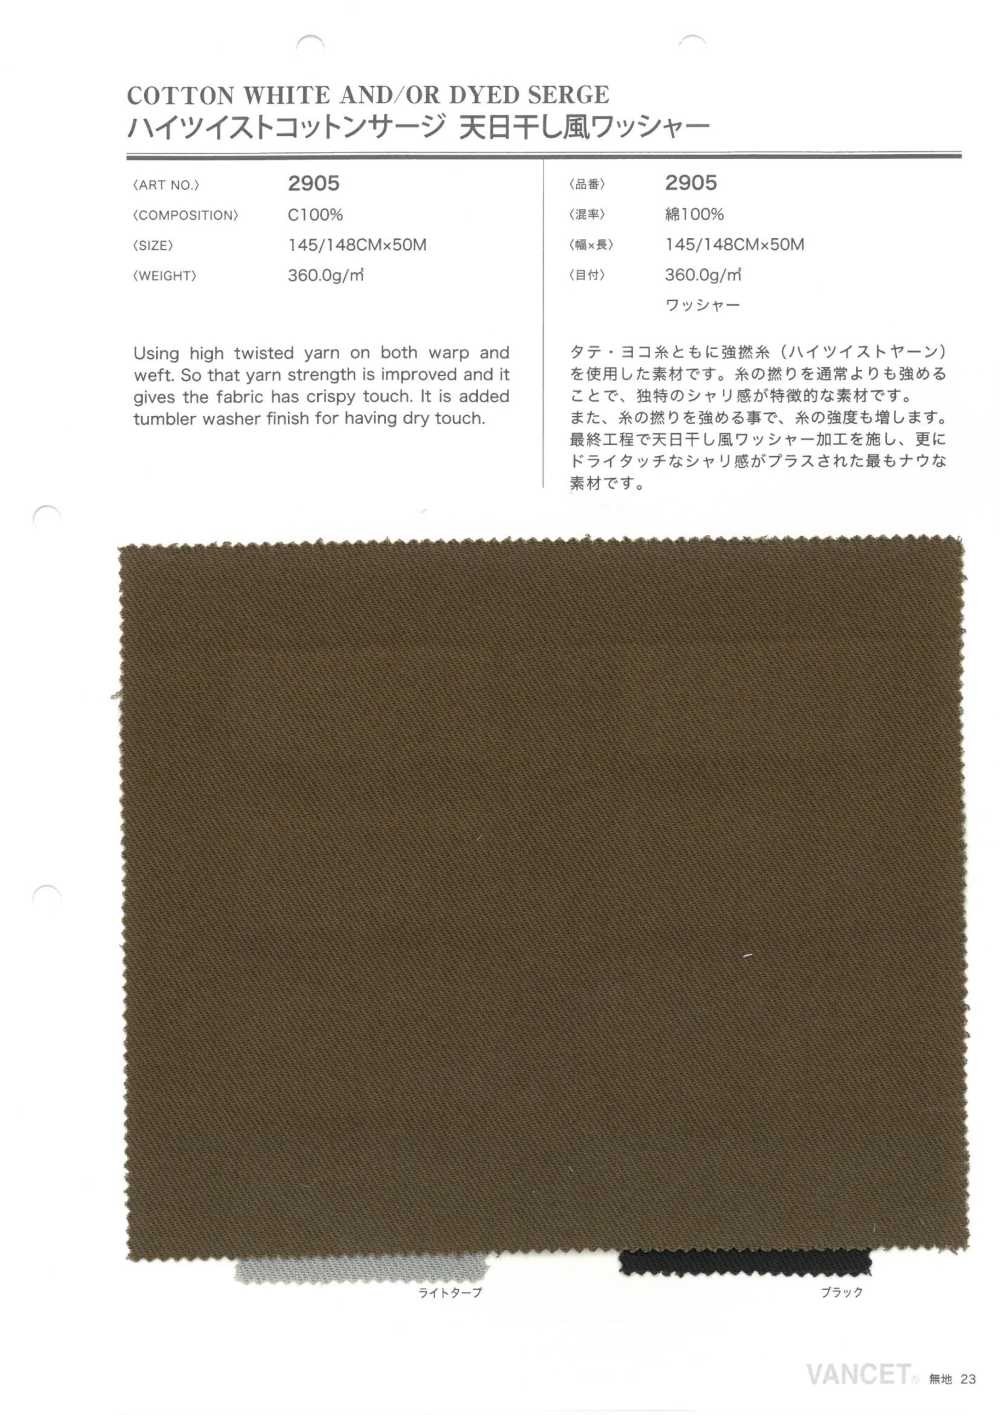 2905 High Twisted Cotton Serge, Sonnengetrocknete Waschmaschinenverarbeitung[Textilgewebe] VANCET